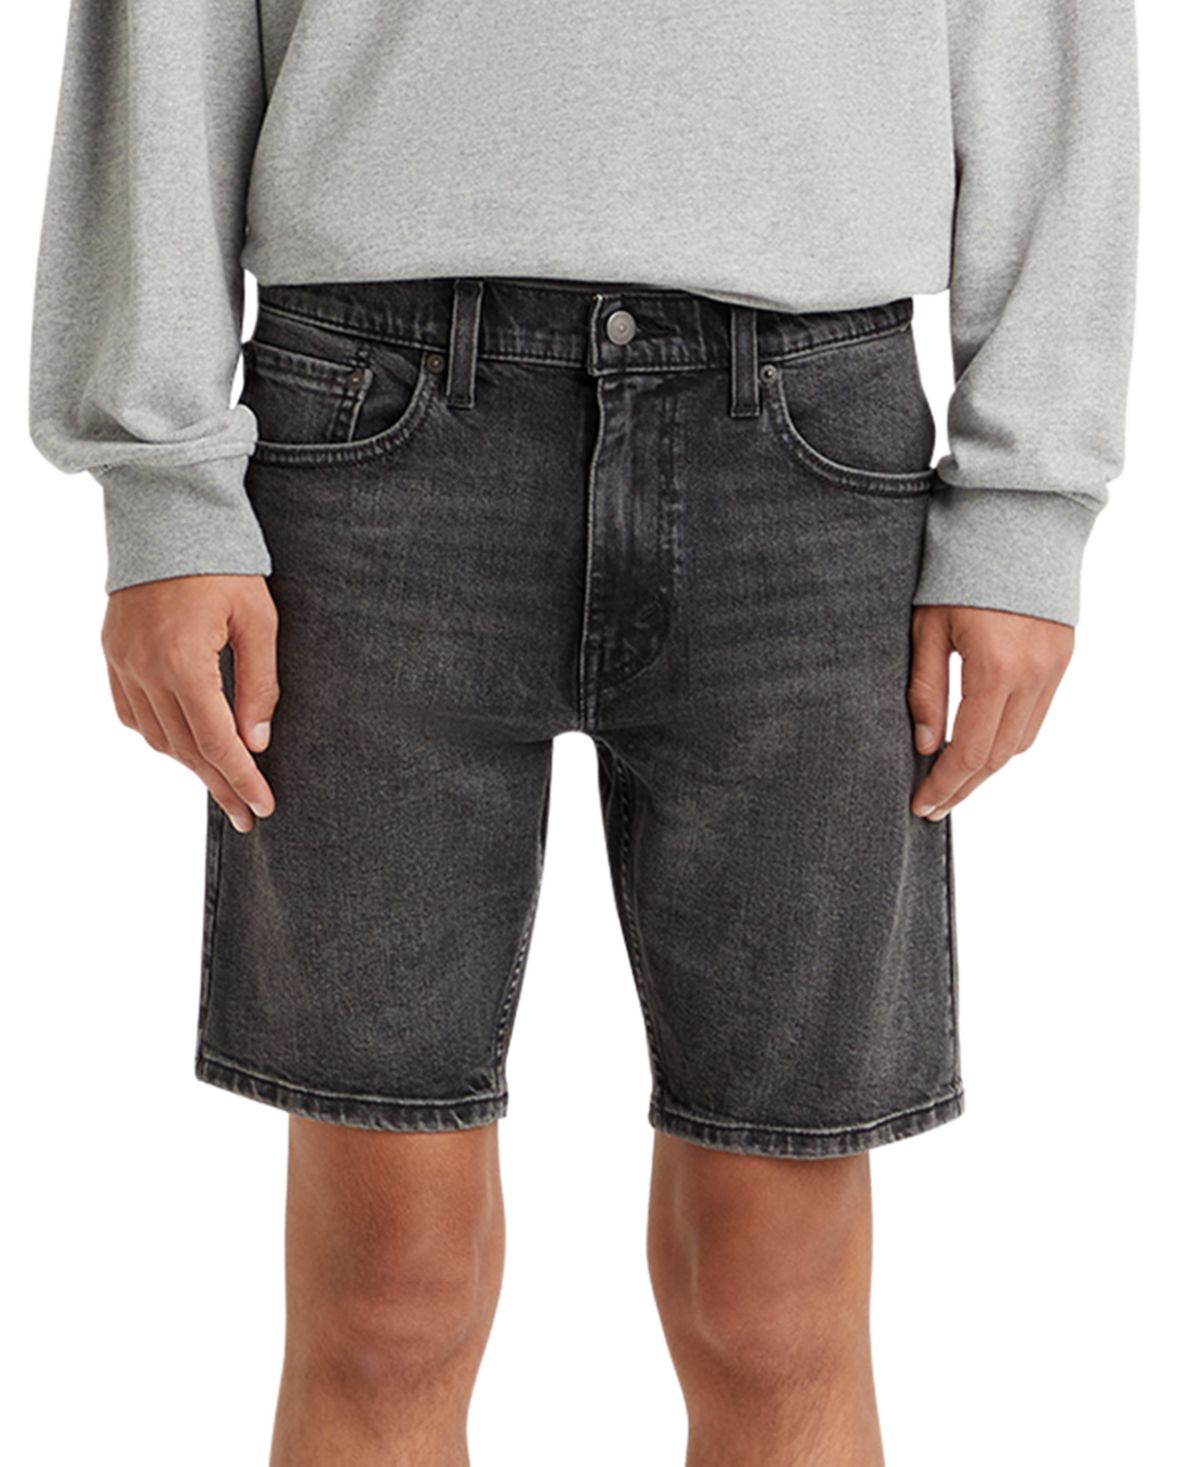 Мужские джинсовые шорты Flex 412 Slim Fit с 5 карманами и шириной 9 дюймов Levi's